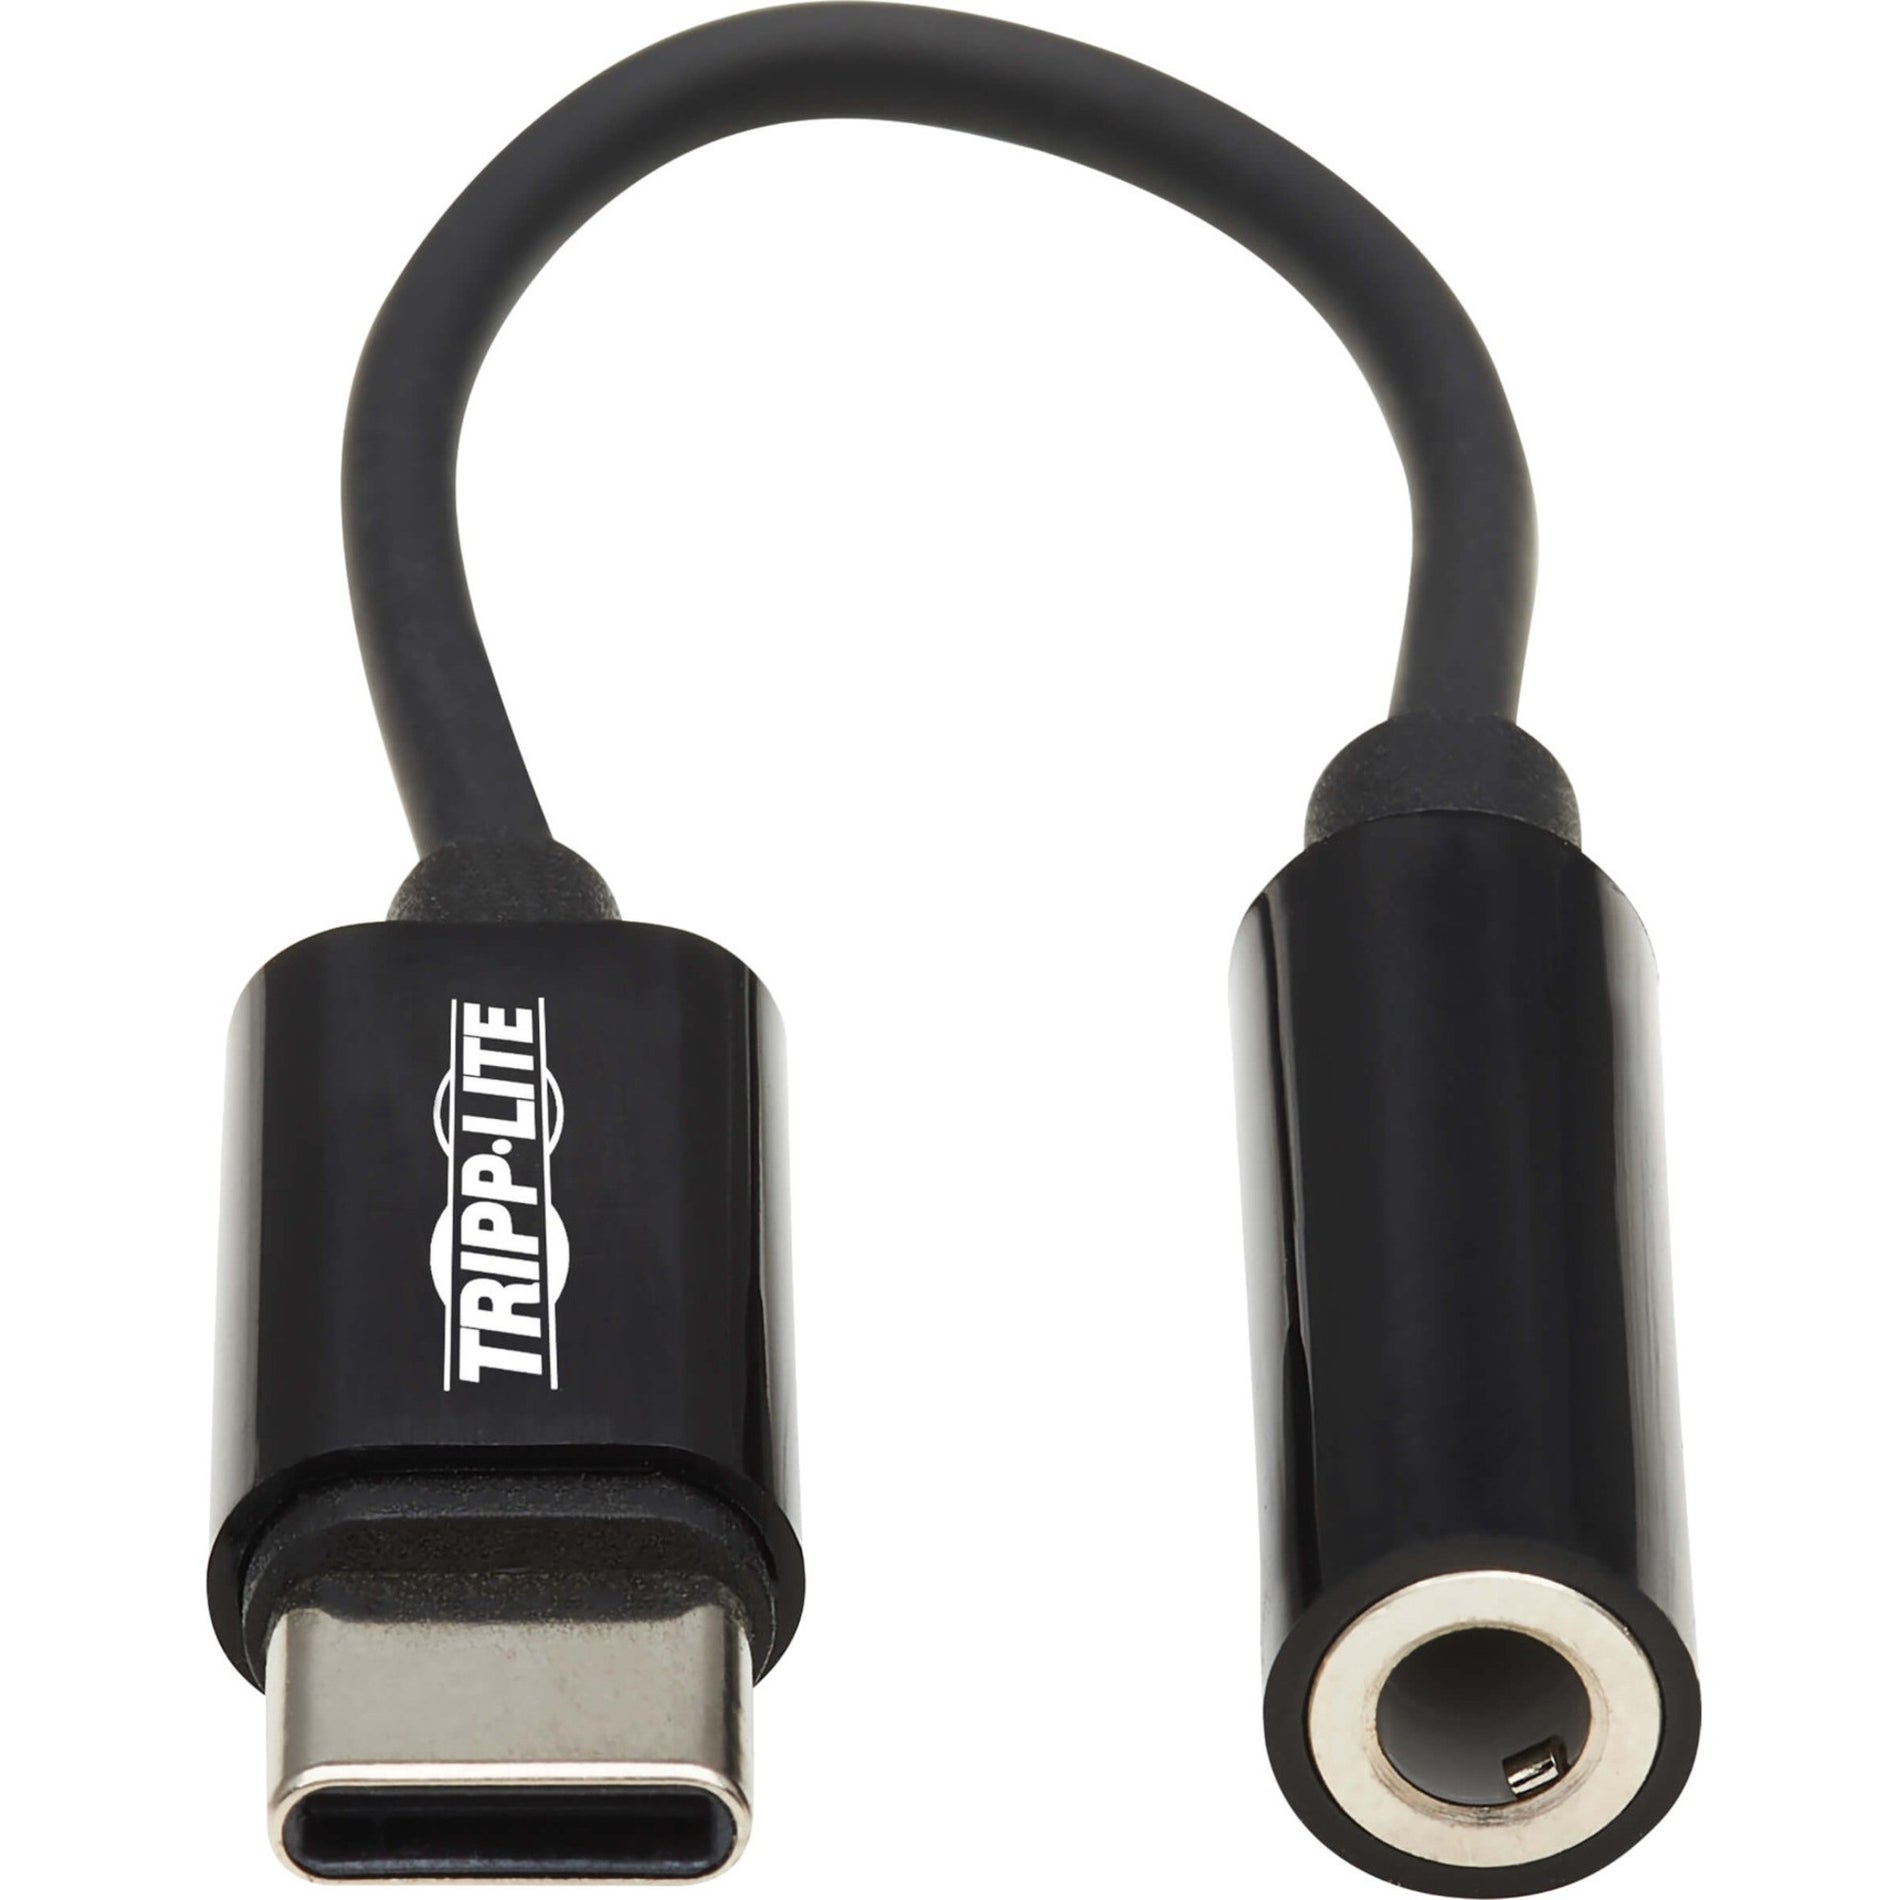 تريب لايت U437-001 محول USB-C إلى مقبس سماعة رأس 3.5 مم ، سهل التركيب والاستخدام ، كابل بطول 7.92 بوصة ، أسود